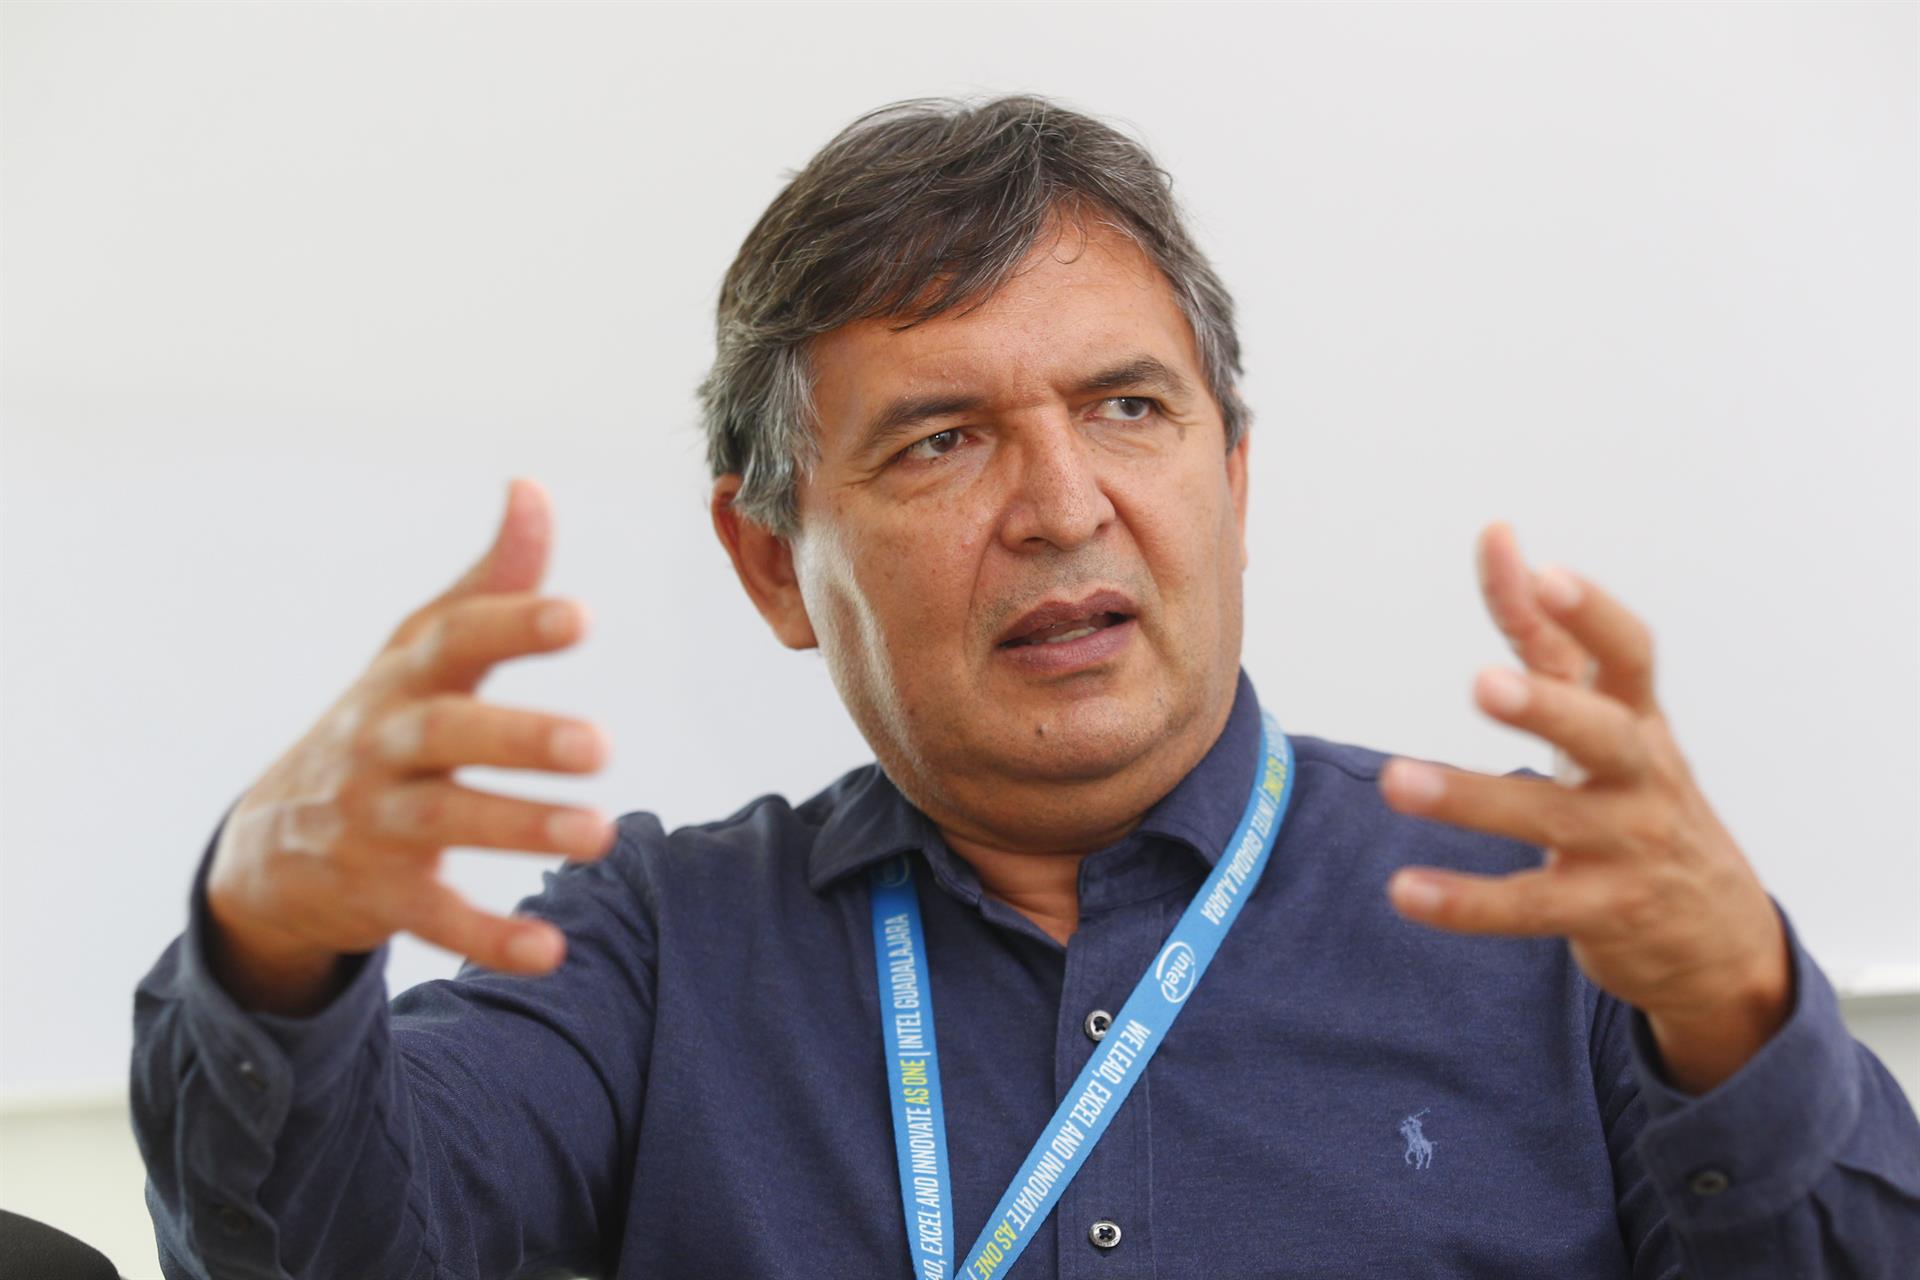 El gerente general de Intel Centro de Diseño Guadalajara (GDC), Jesús Palomino, habla durante una conferencia el 8 de julio de 2022 en Zapopan, estado de Jalisco (México). EFE/ Francisco Guasco
